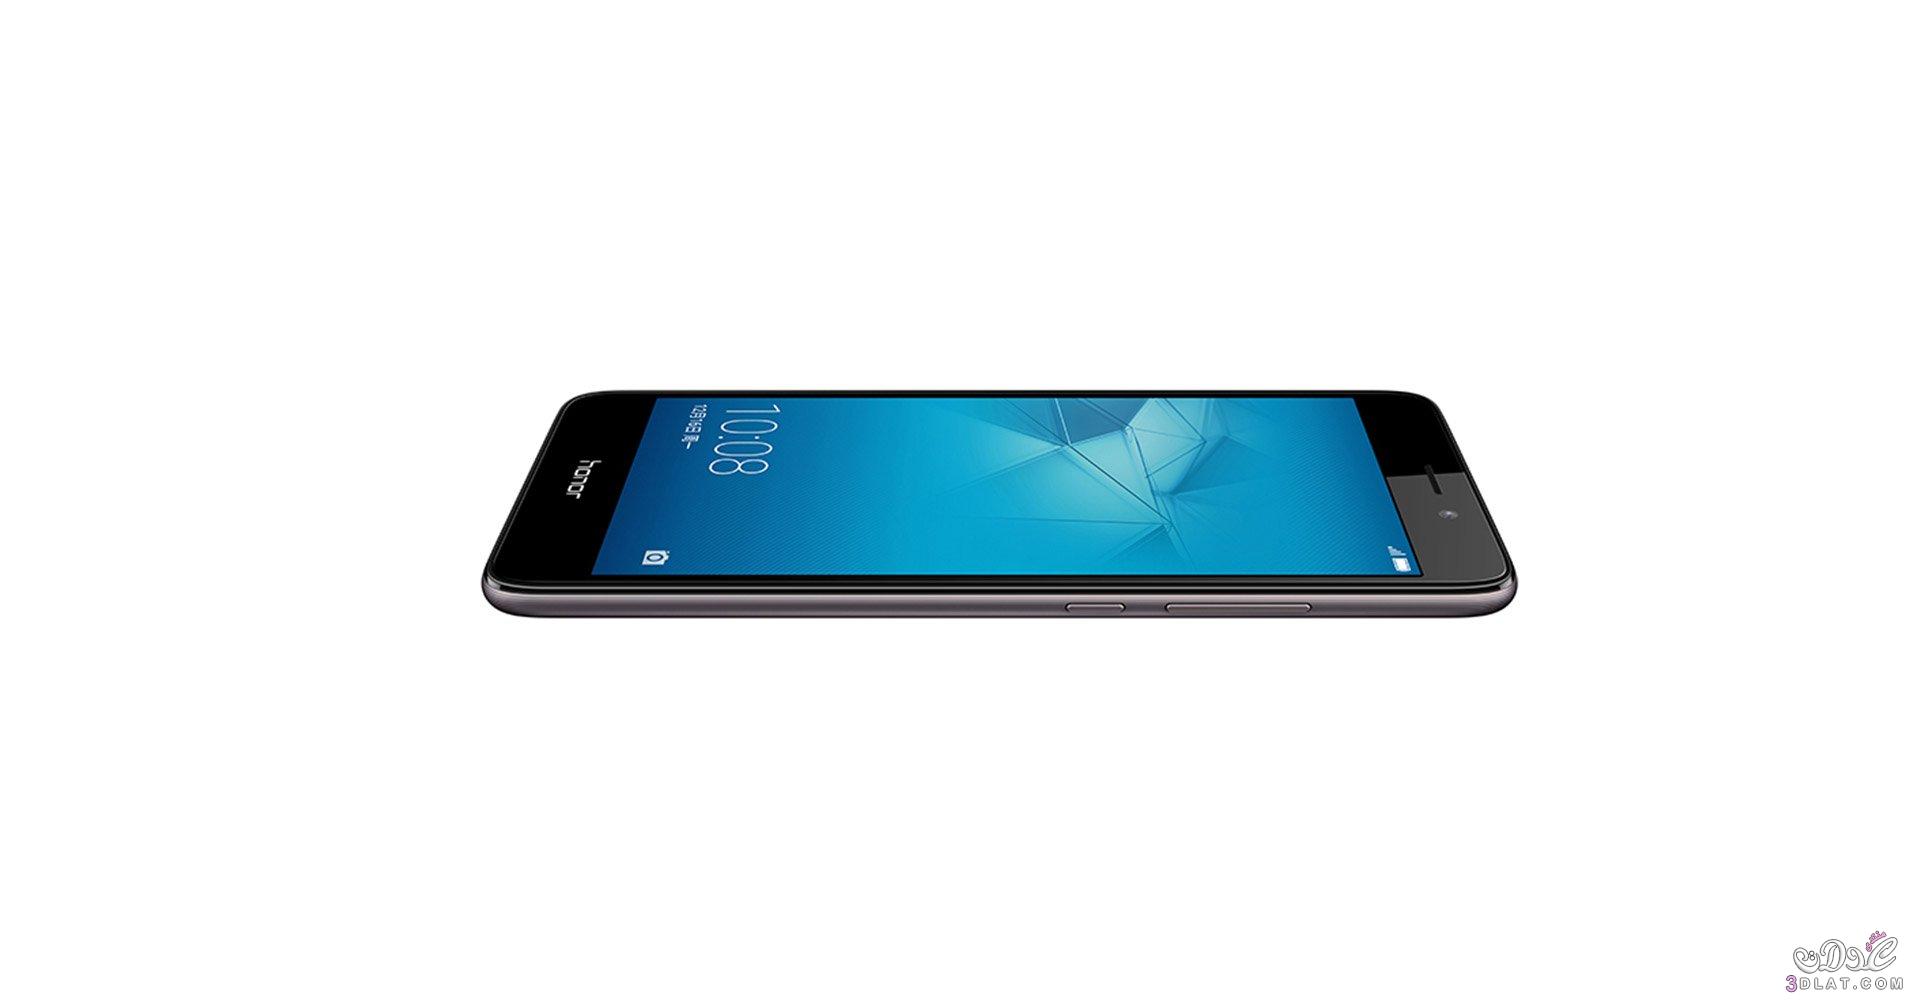 أعلنت شركة هواوي اليوم الخميس عن هاتفها الذكي أونور 5س